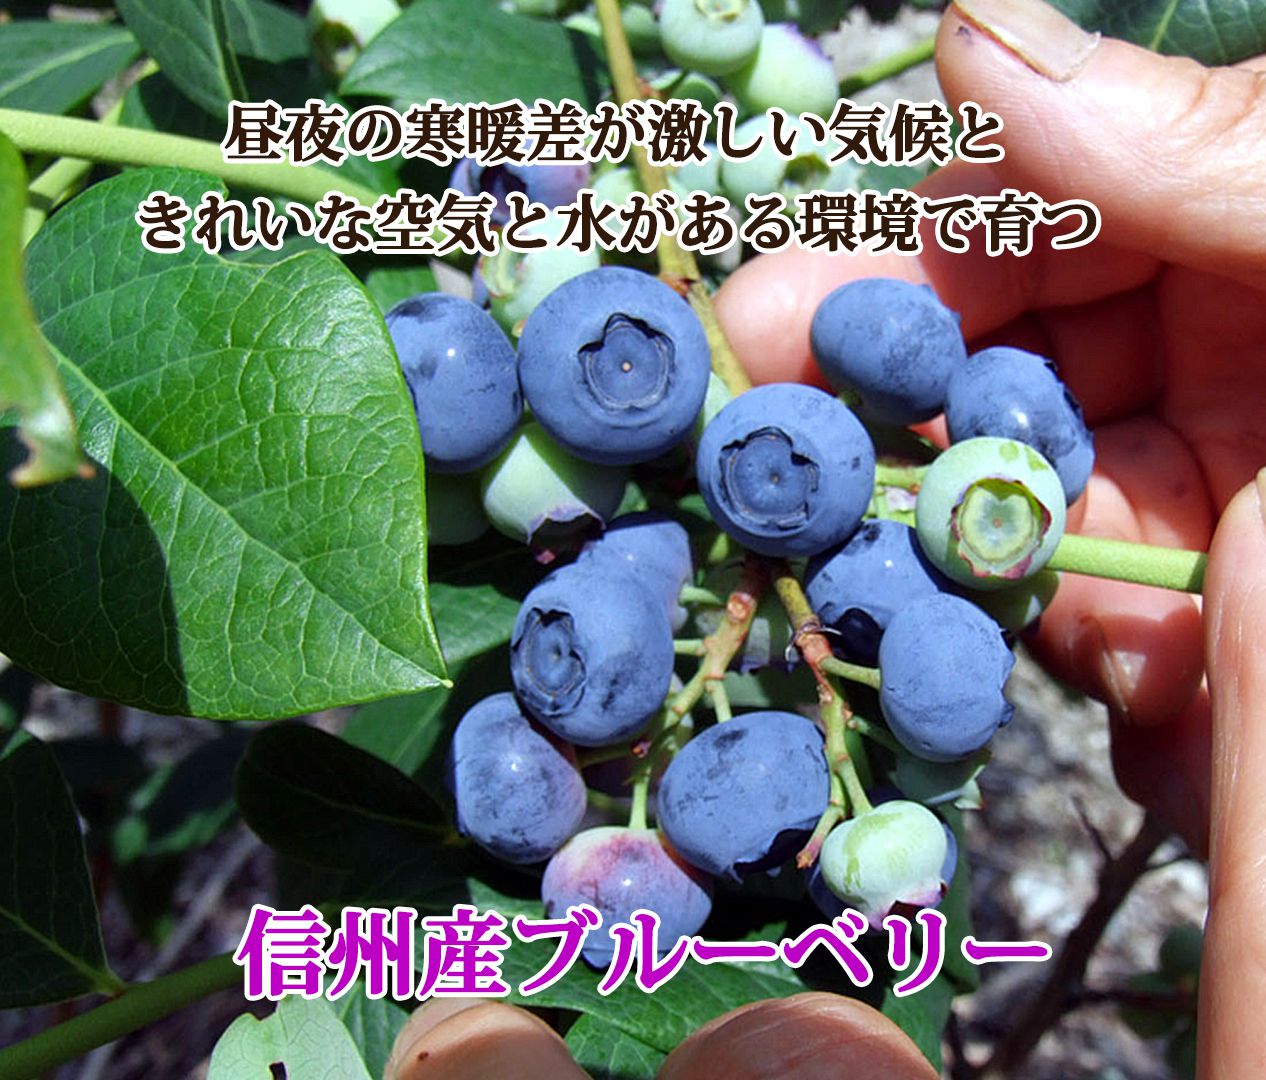 ブルーベリー 長野県産 冷凍 フルーツ 果物 大容量 700g スムージー ジャムなどに | わらいみらい